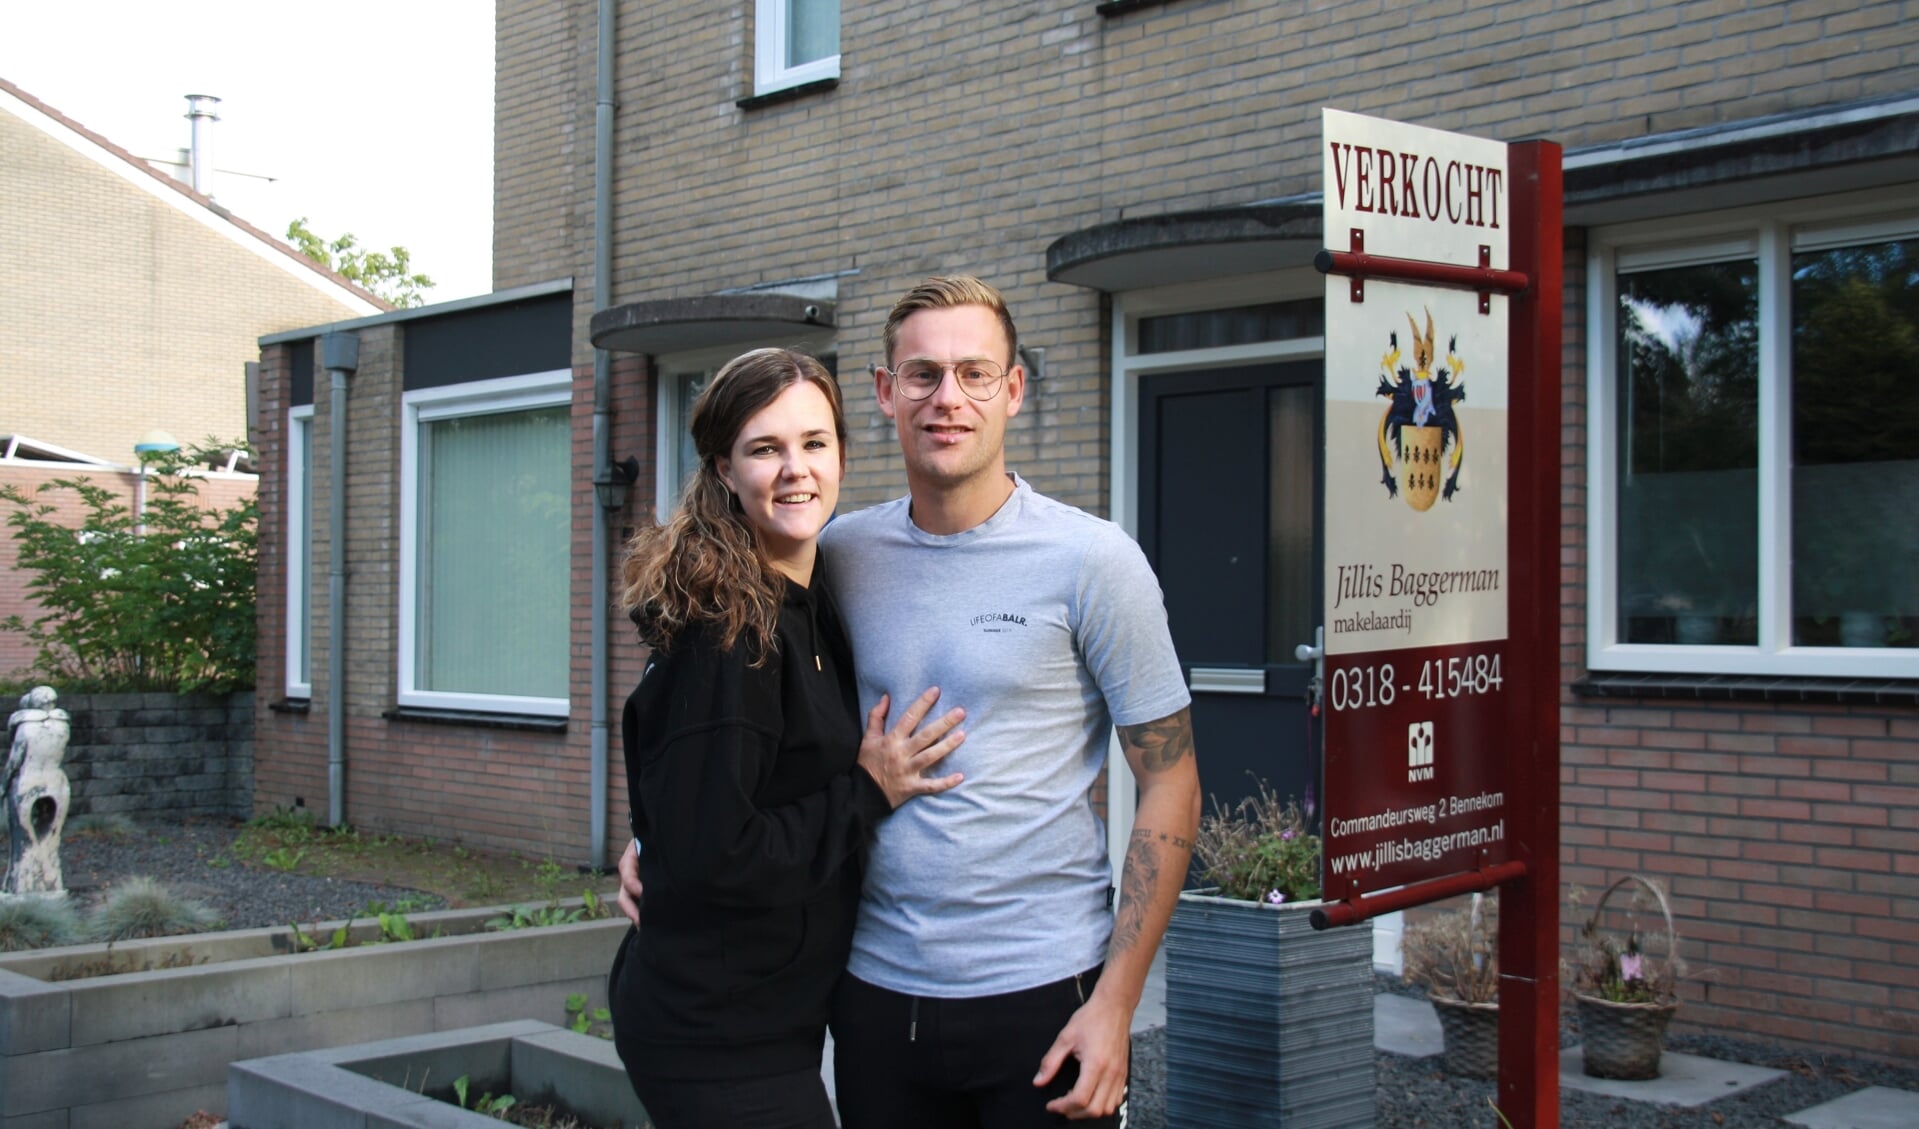 Willianne en Remco hebben hun huis verkocht via Jillis Baggerman makelaardij. 